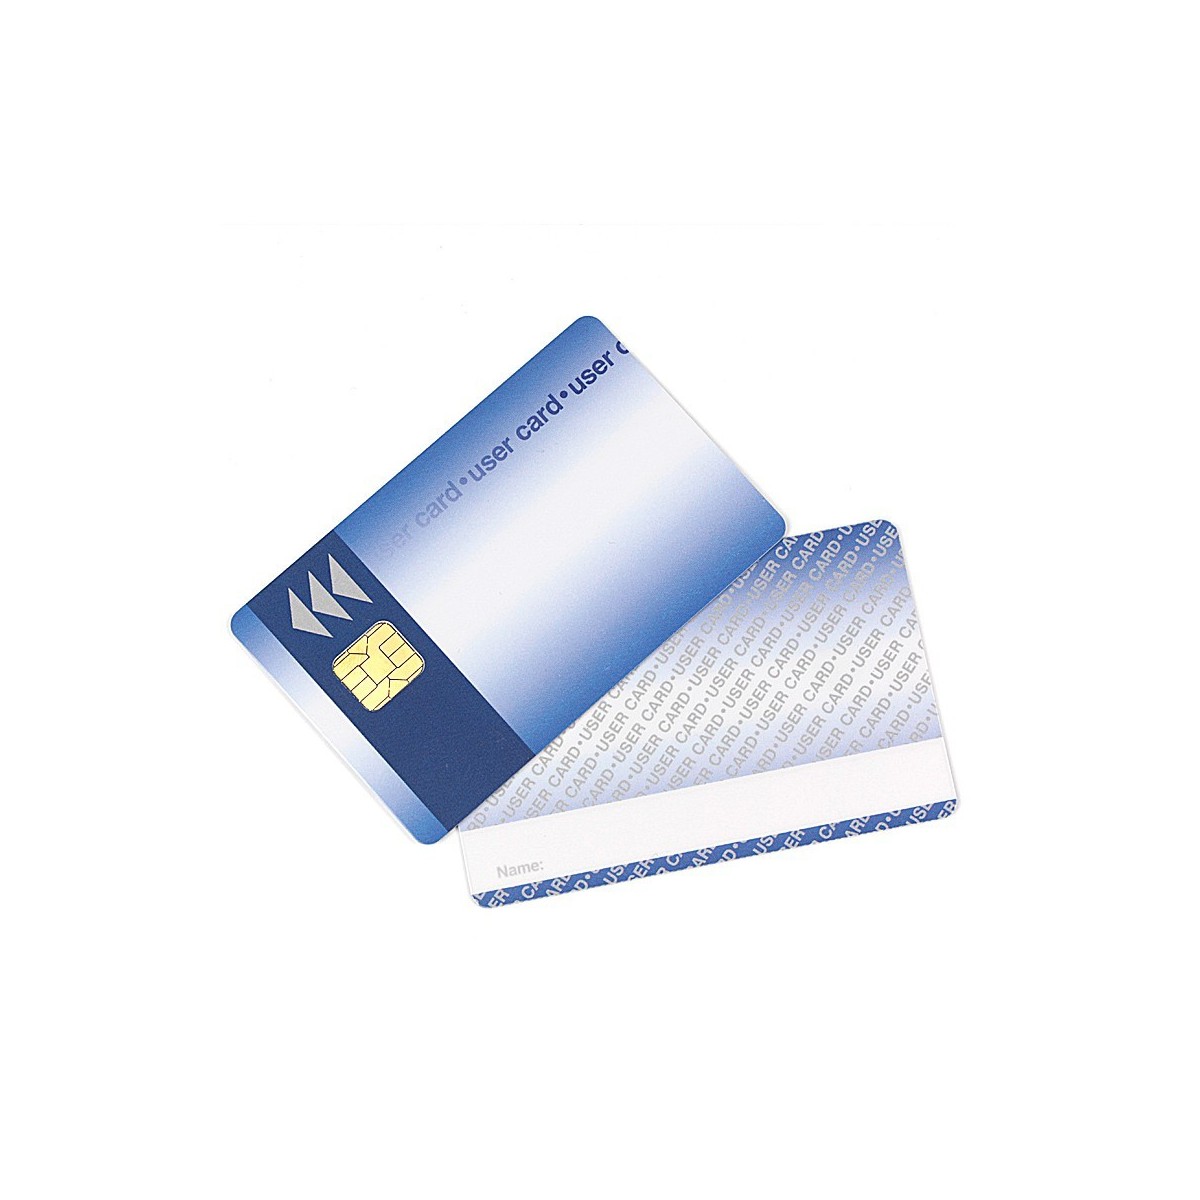 I2C-Smart Card 32 kByte (256k-Bit)